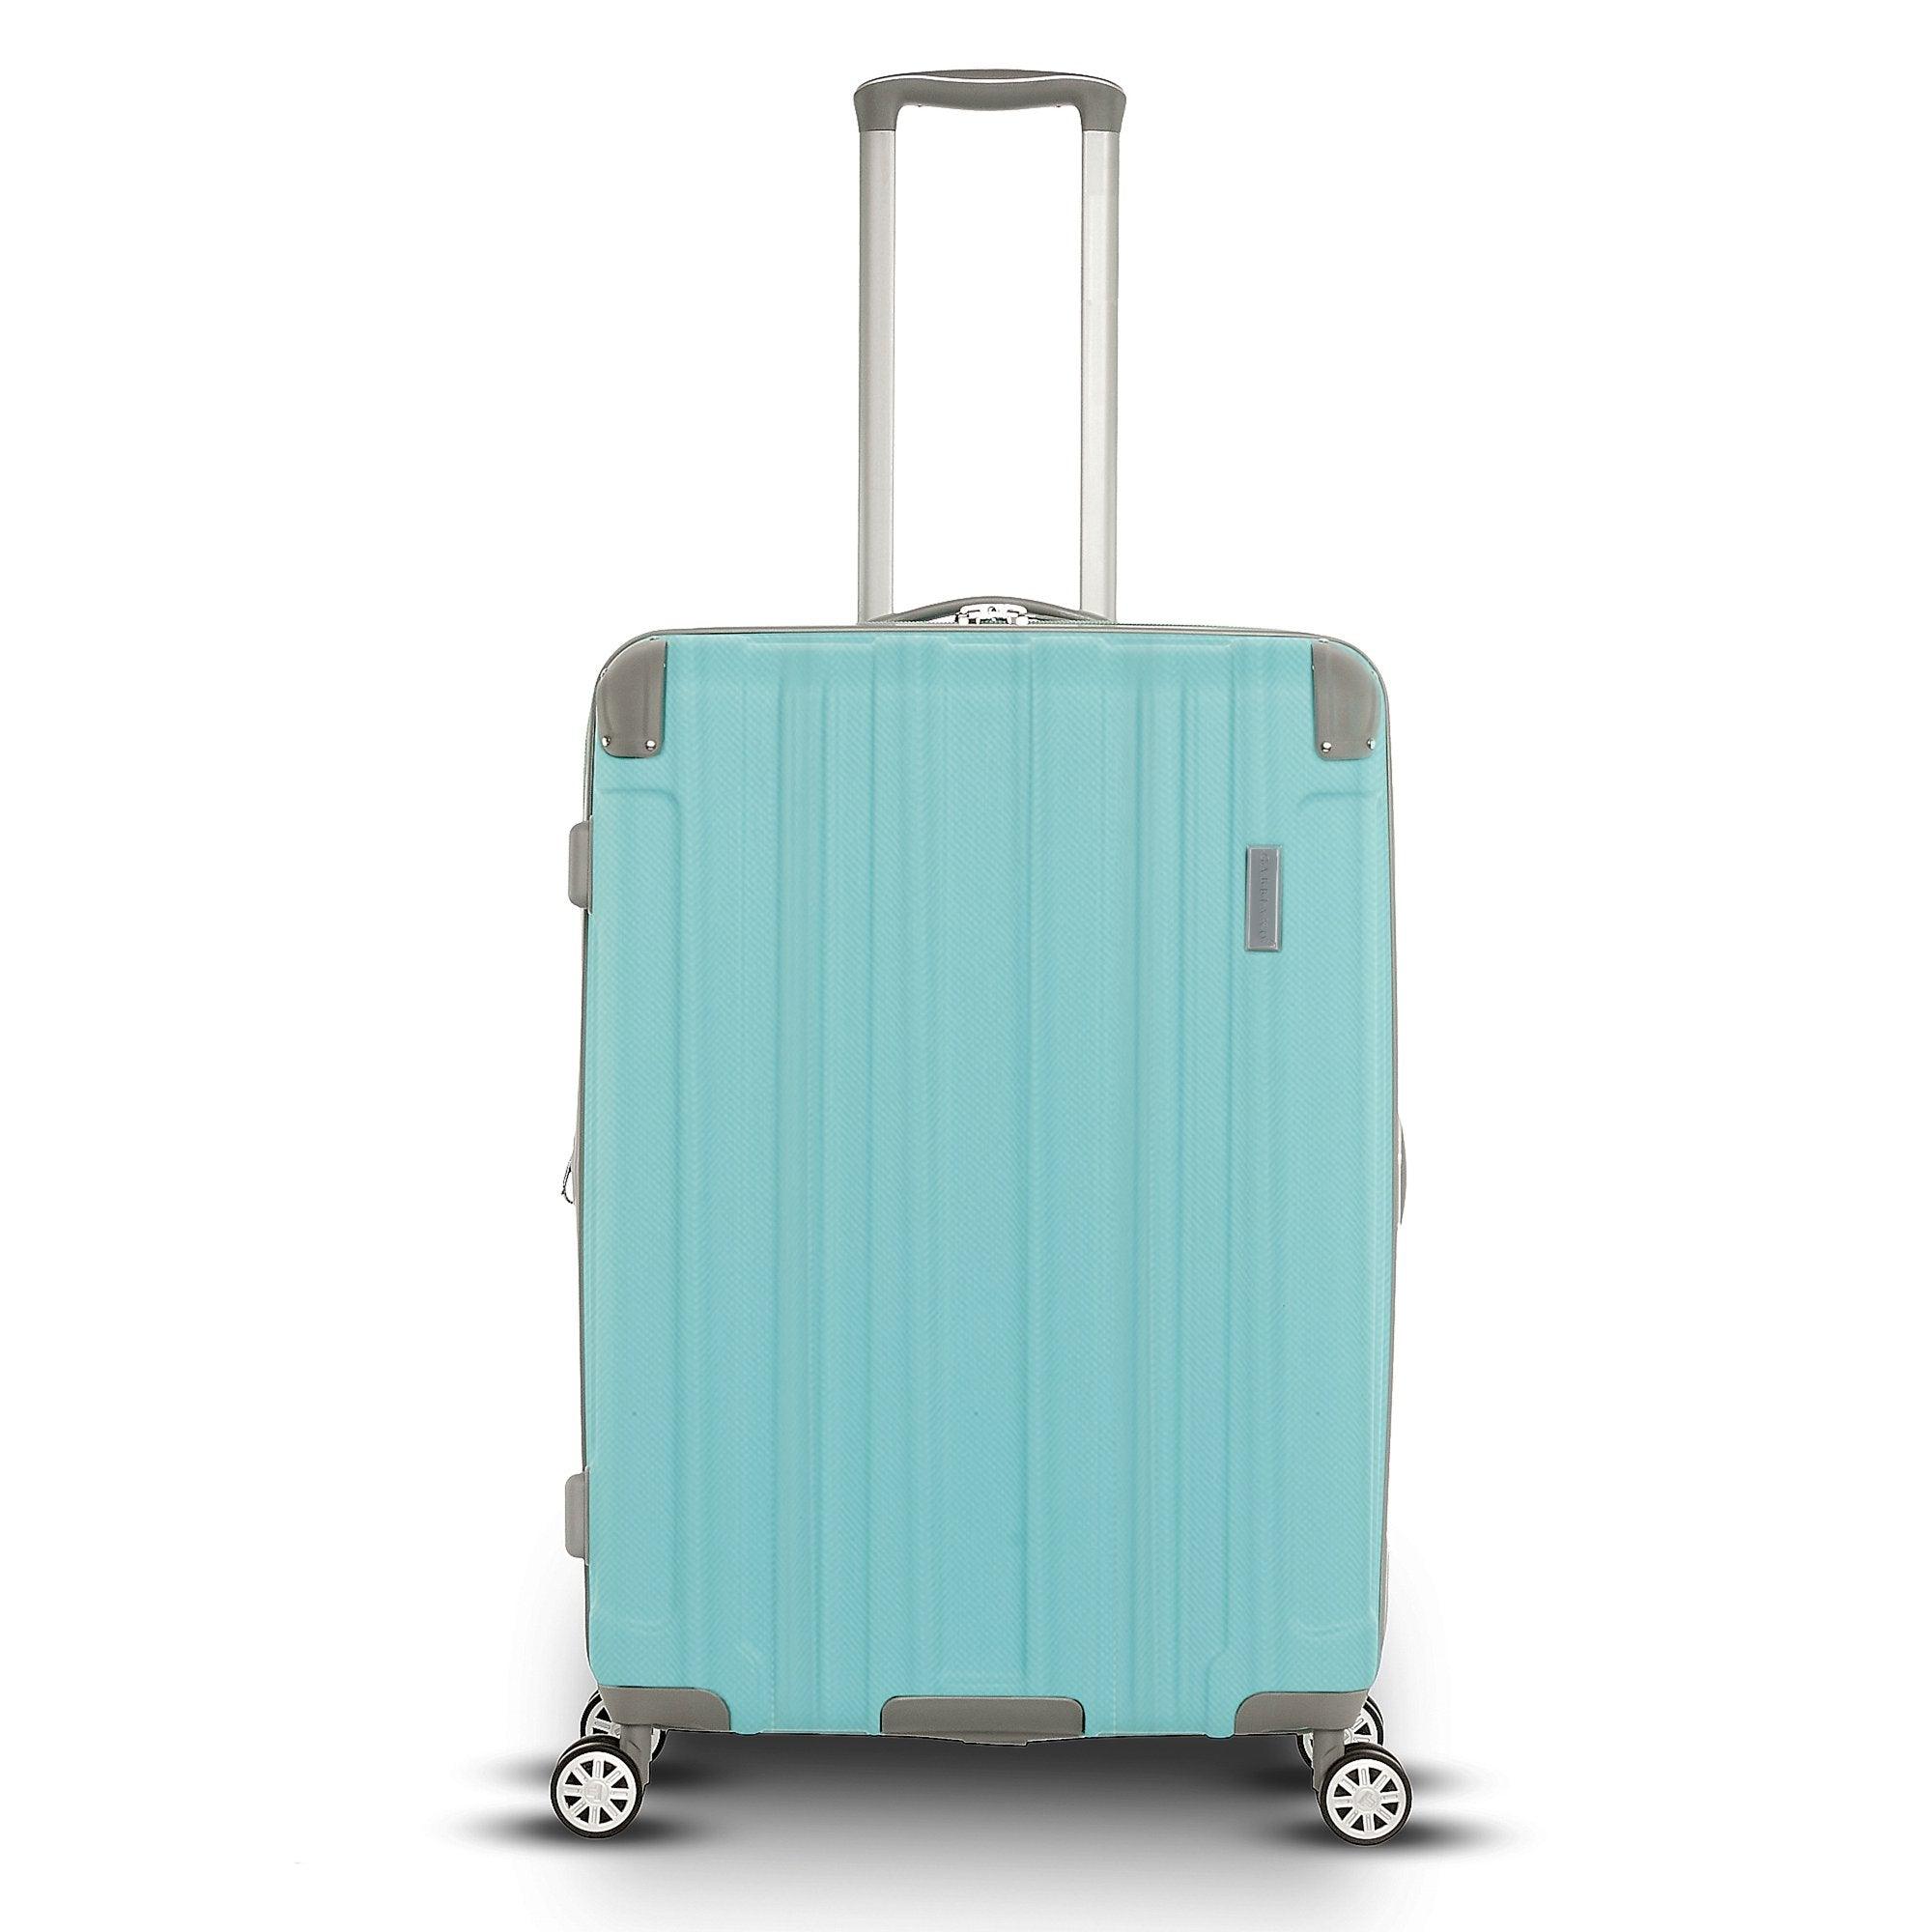 Ga2070 Pc+Abs Hard Case 26'' - Voyage Luggage